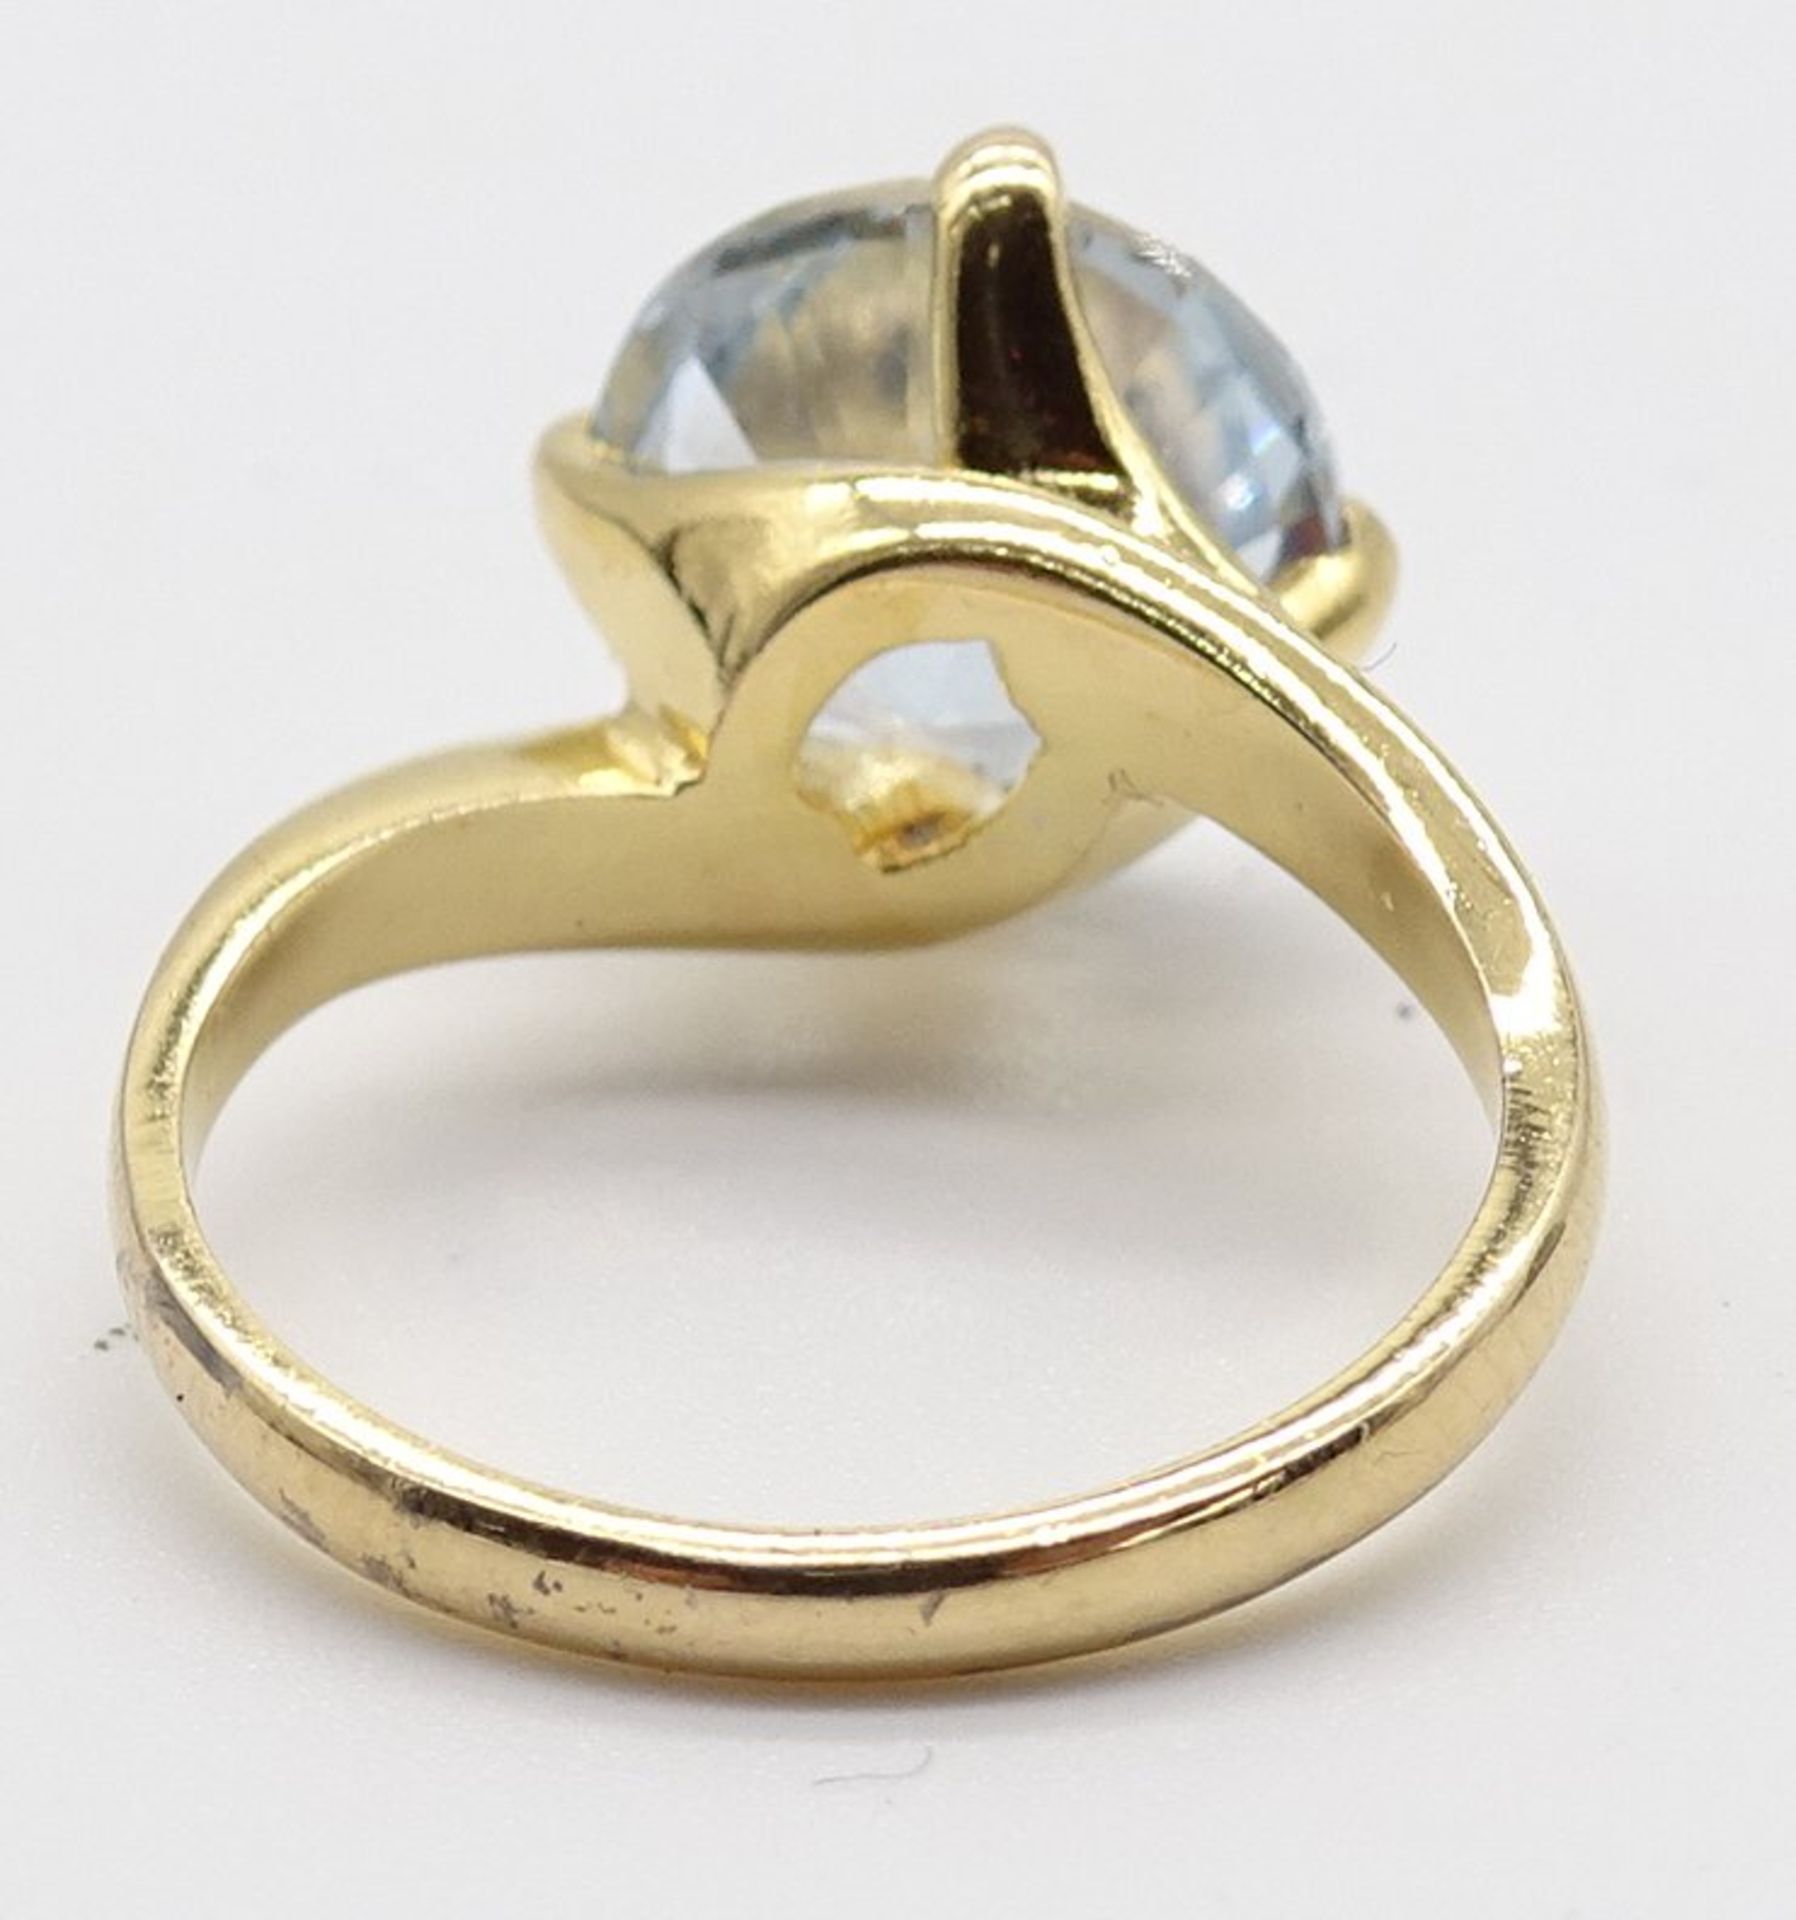 Silberring 800/000 vergoldet, gefasst mit einem blauen Edelstein, Gewicht: 3,2 g. RG: 50 - Image 5 of 6